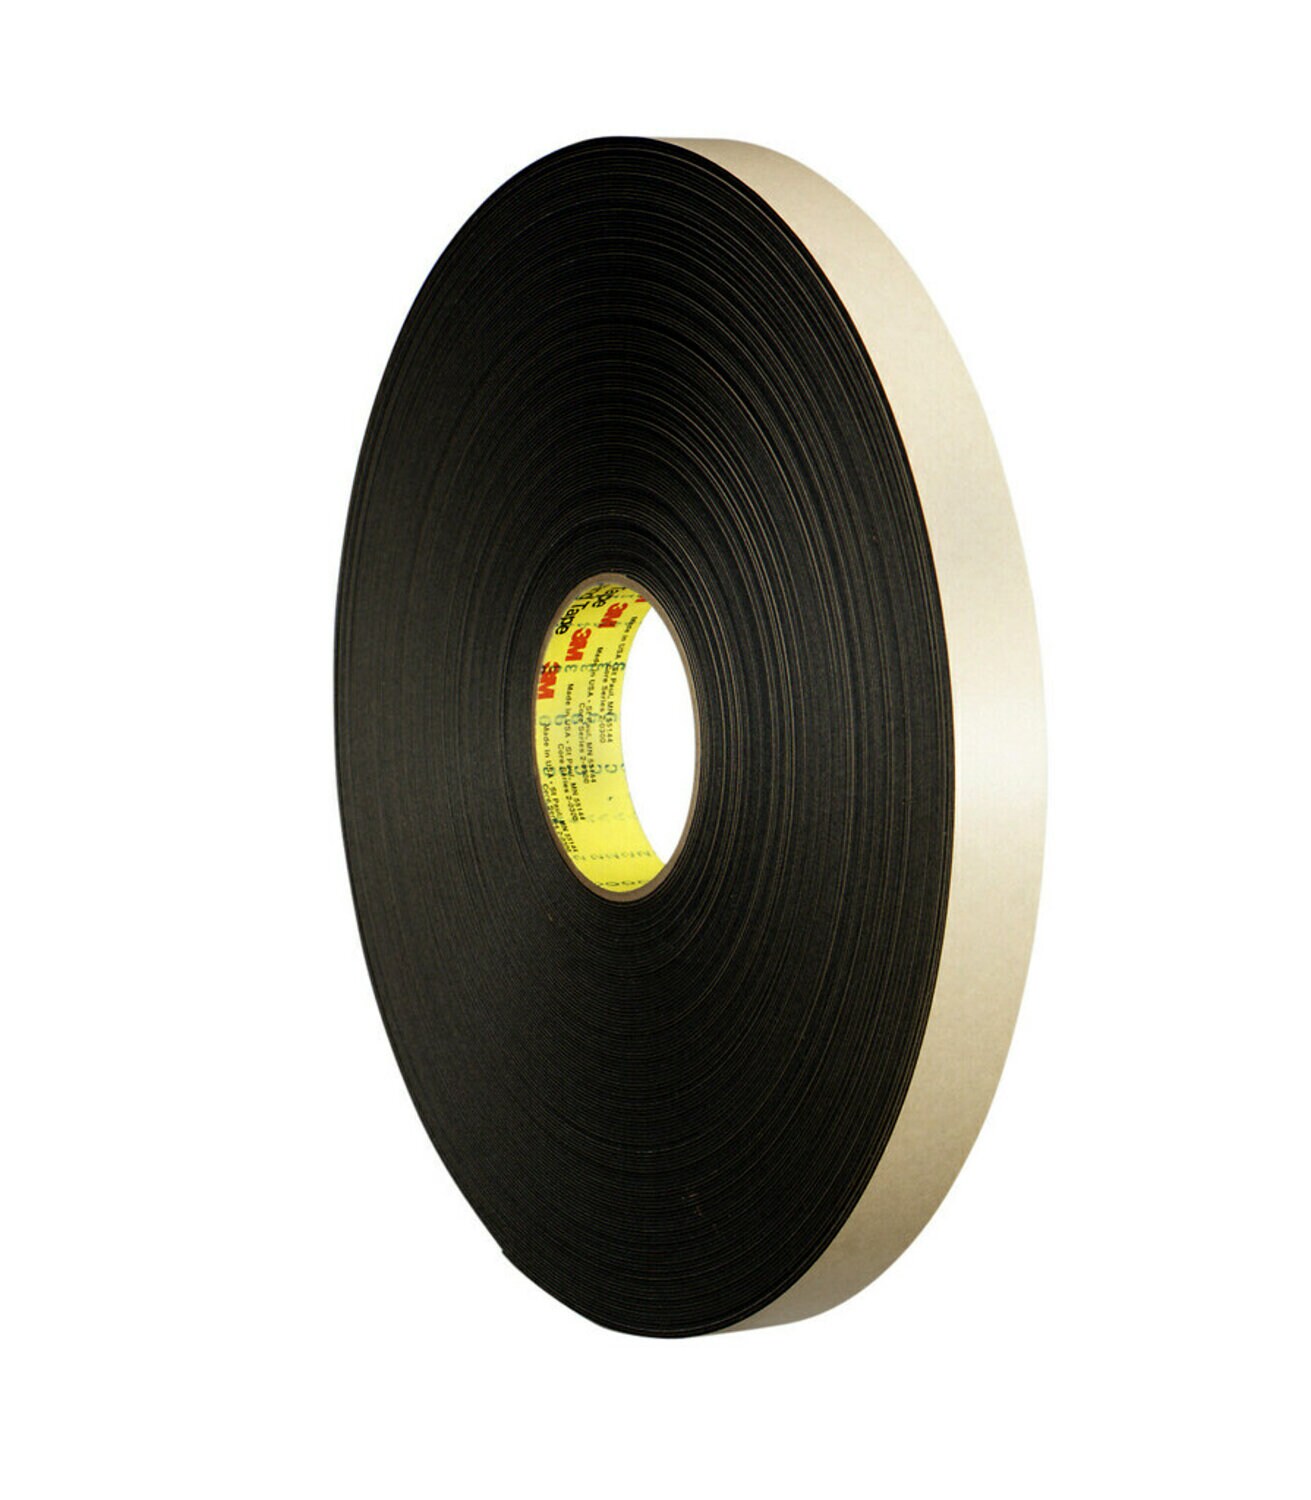 7000048742 - 3M Double Coated Polyethylene Foam Tape 4492B, Black, 48 in x 72 yd, 31
mil, 1 roll per case